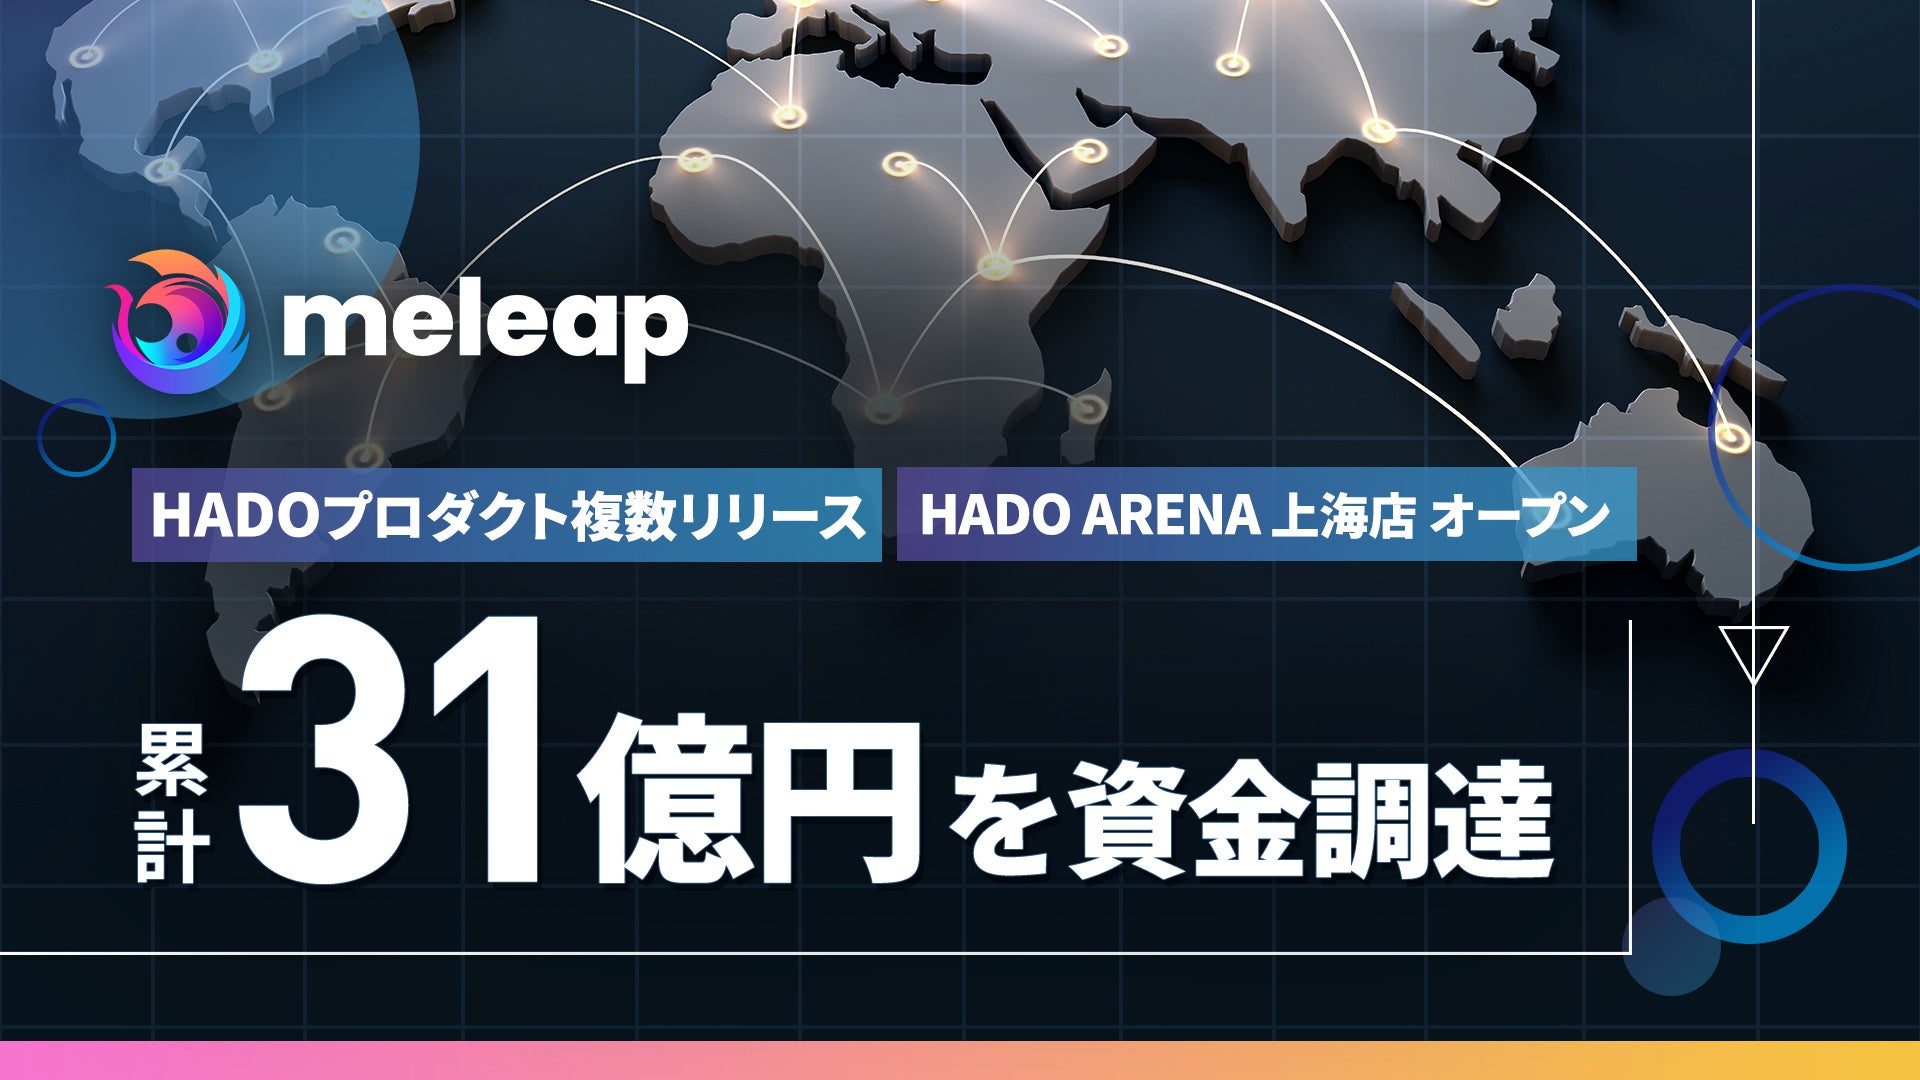 ARスポーツ「HADO」をグローバル展開する株式会社meleapがシリーズCの資金調達を実施。累計資金調達額 は31億円に。